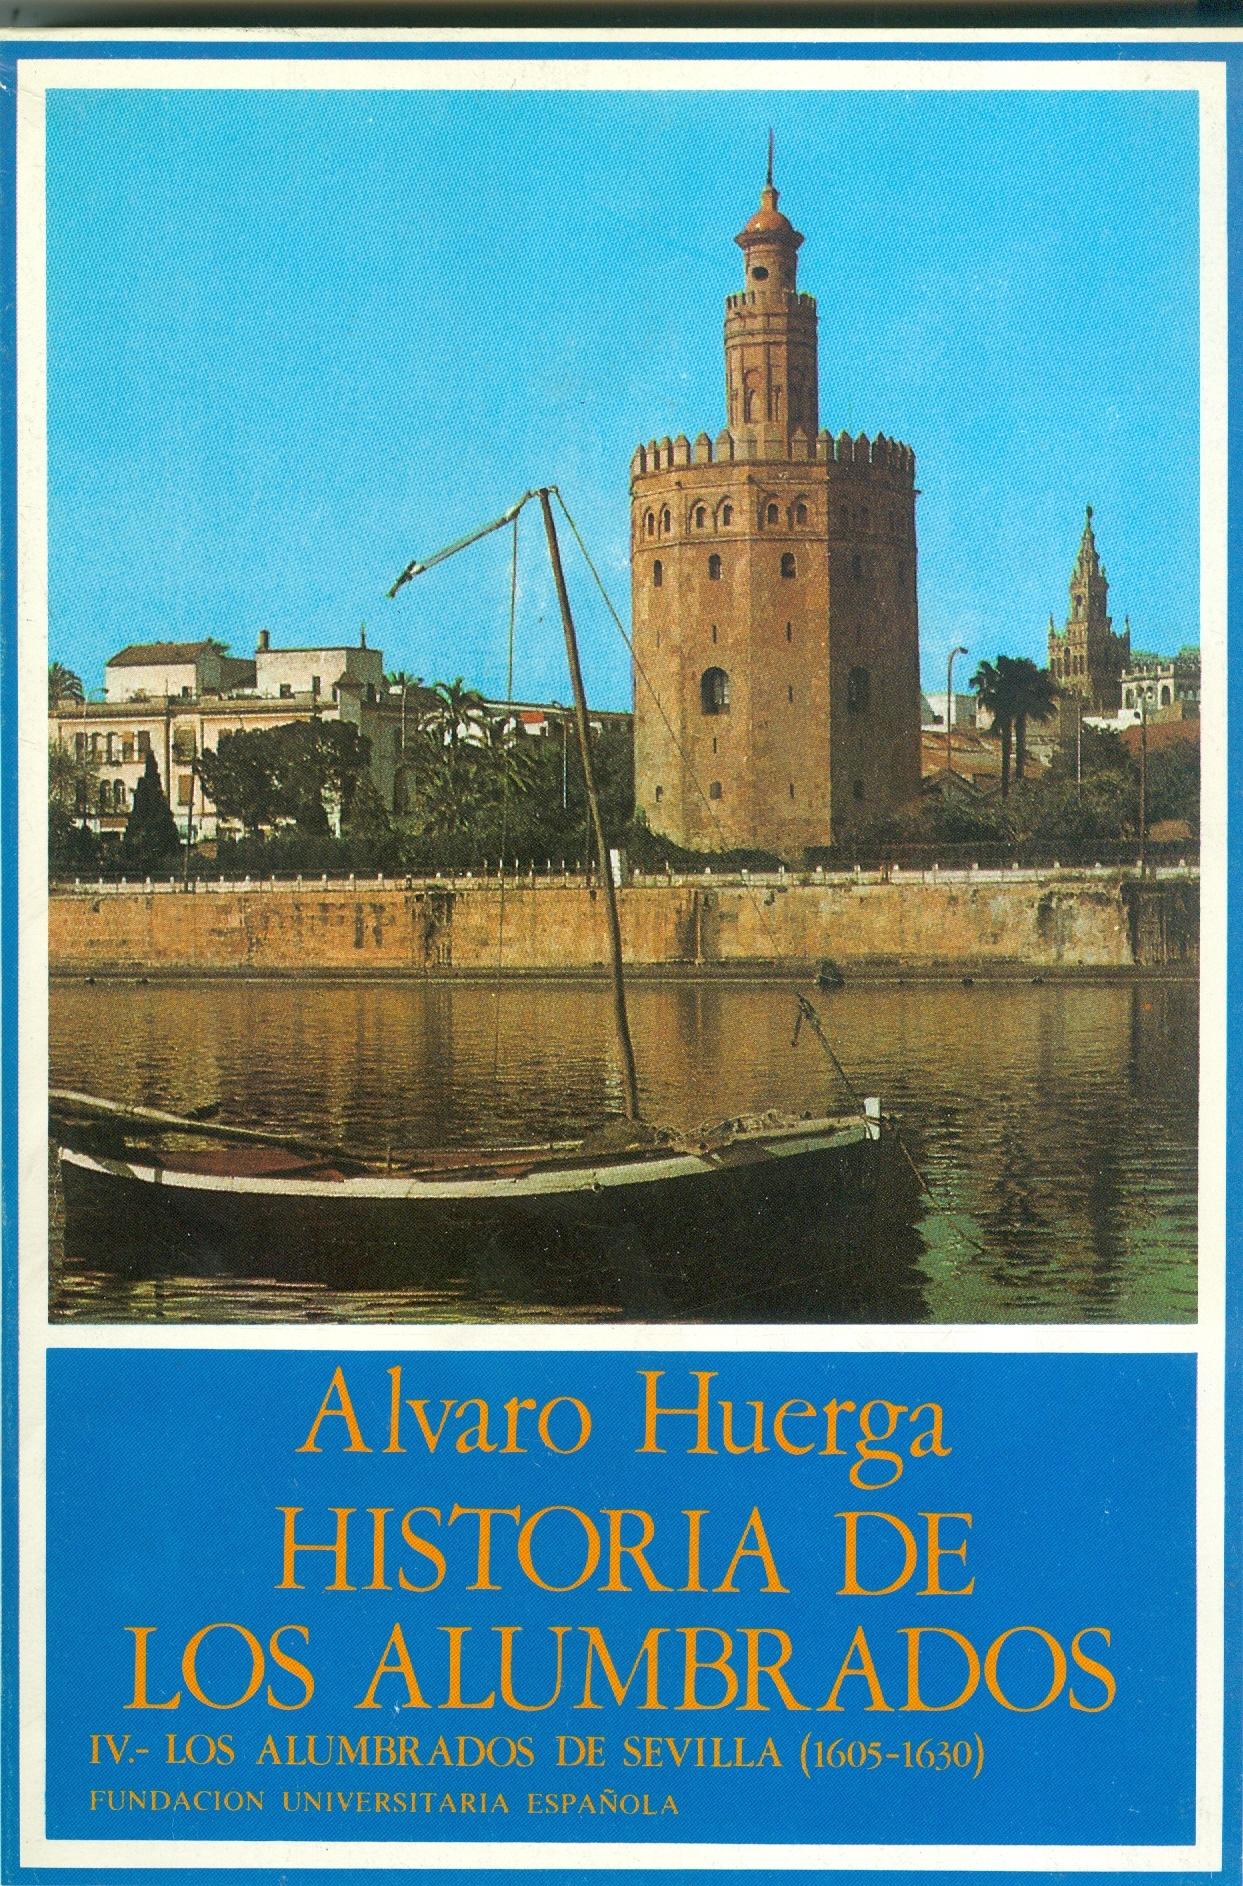 Historia de los alumbrados - IV: Los alumbrados de Sevilla (1605-1630). 